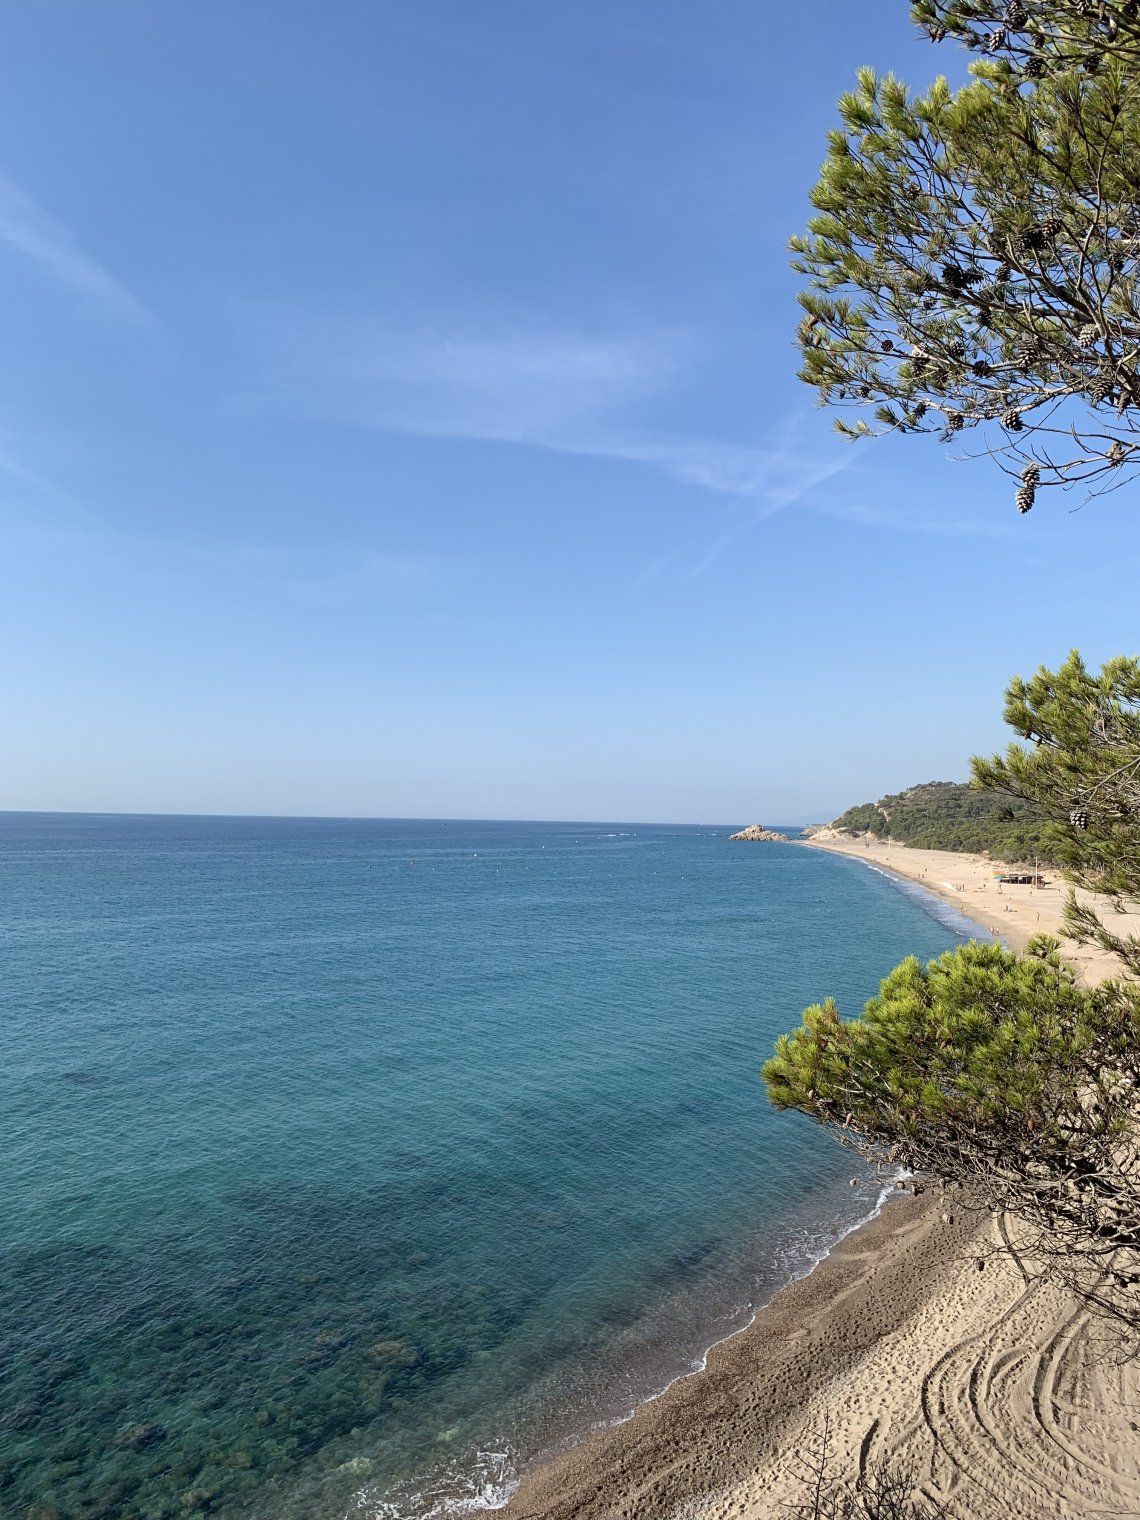 Spanje 2019 route playa nudista